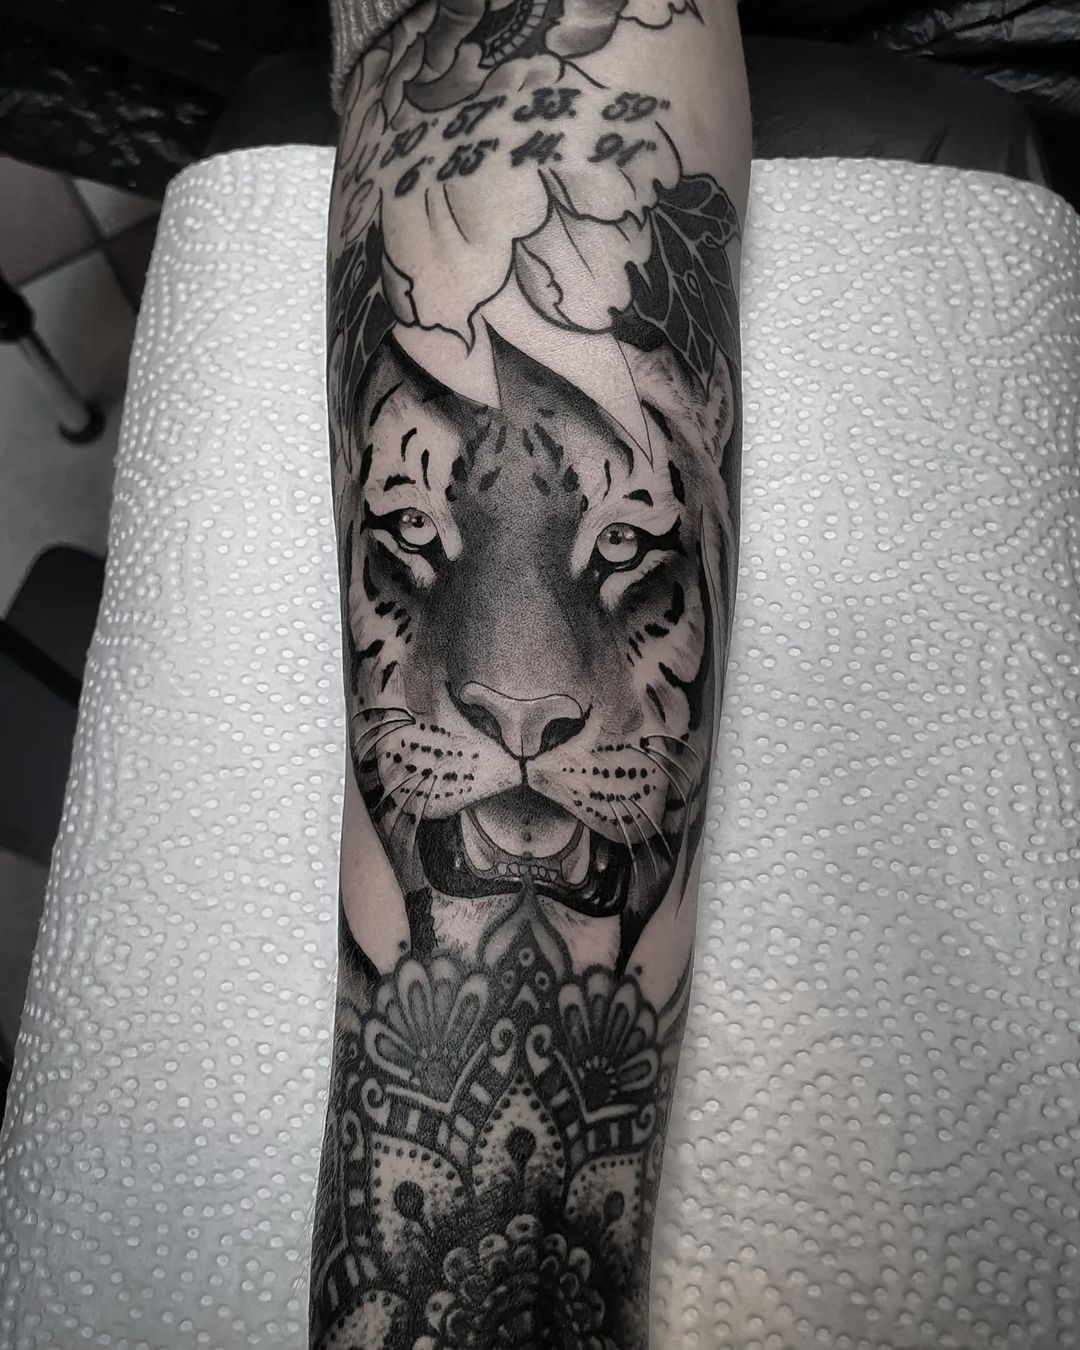 Tiger for @_ang.elina :)
.
.
.
.
#tattoo #ink #tattoos #tiger #inked #tattooarti